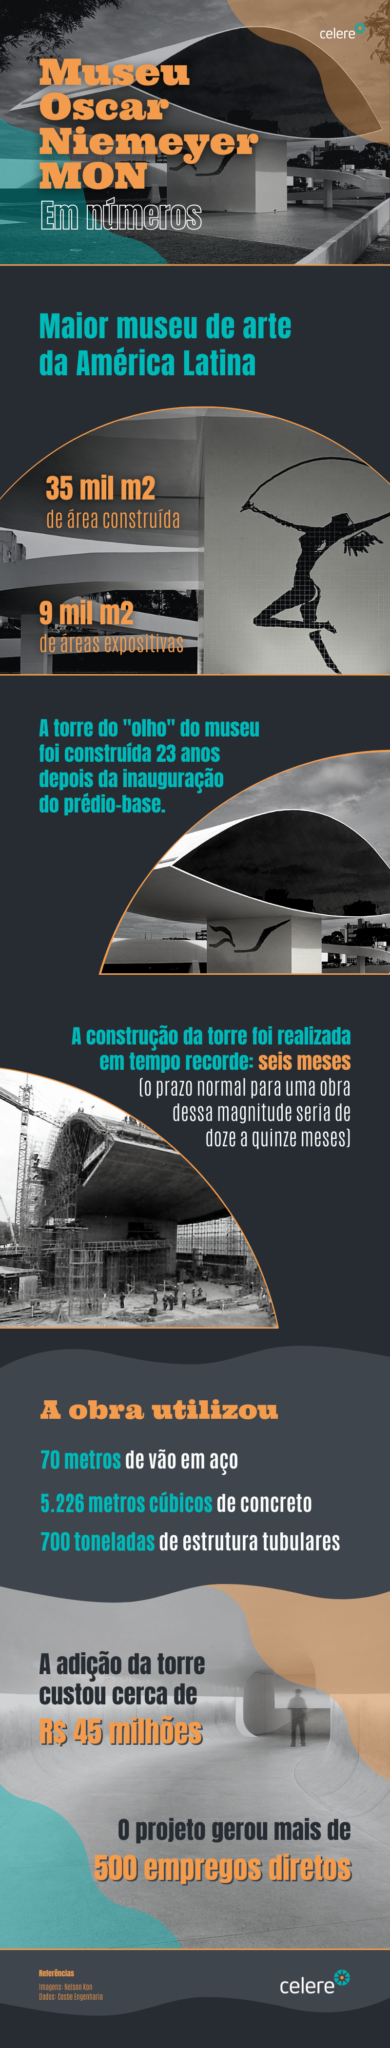 Detalhes da obra do Museu Oscar Niemeyer